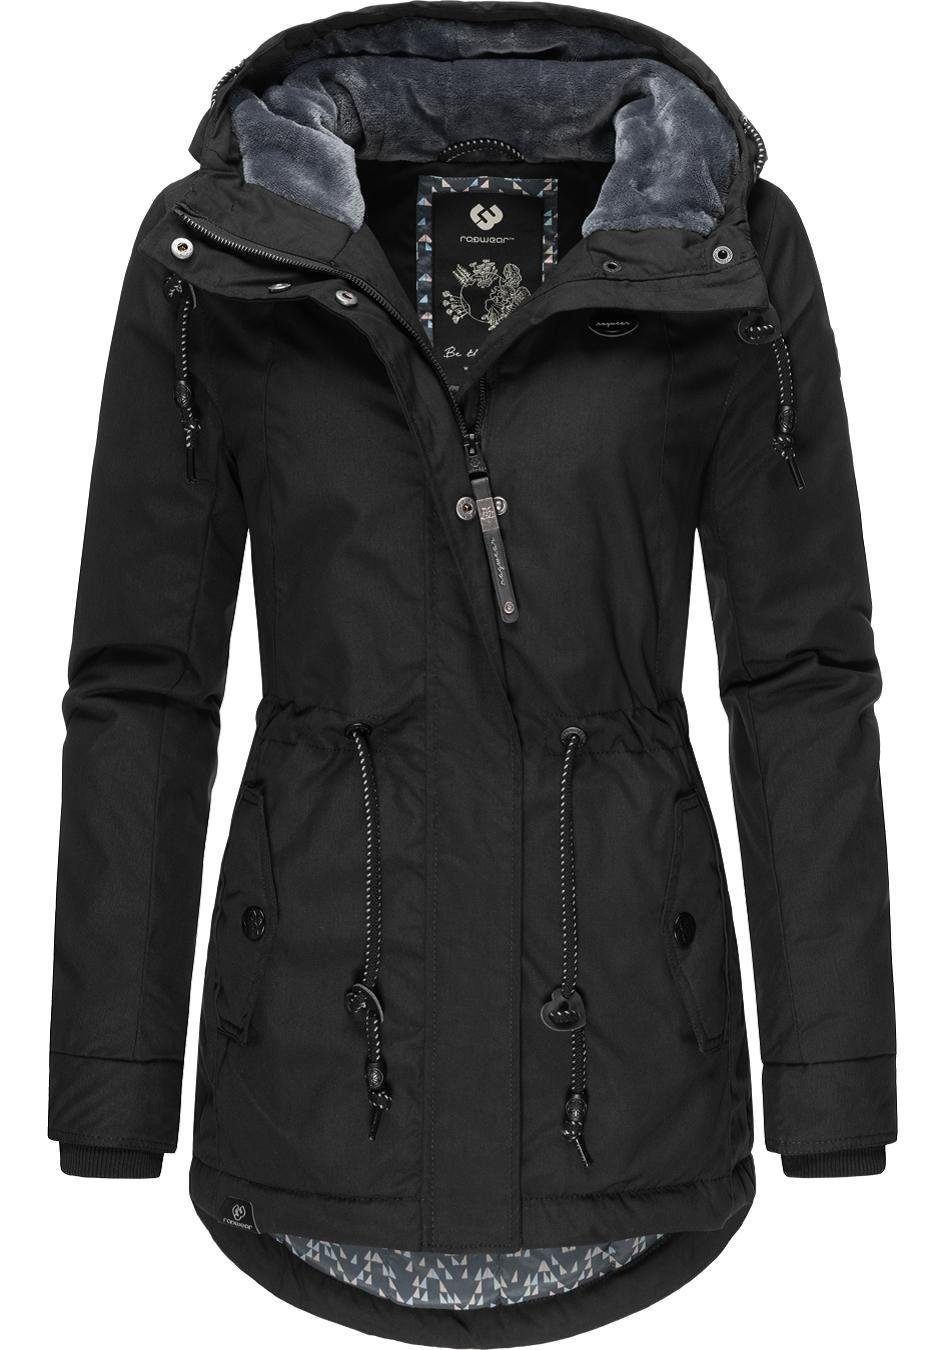 für Winterparka Black stylischer Winterjacke Label anthra Jahreszeit die kalte Ragwear Monadis